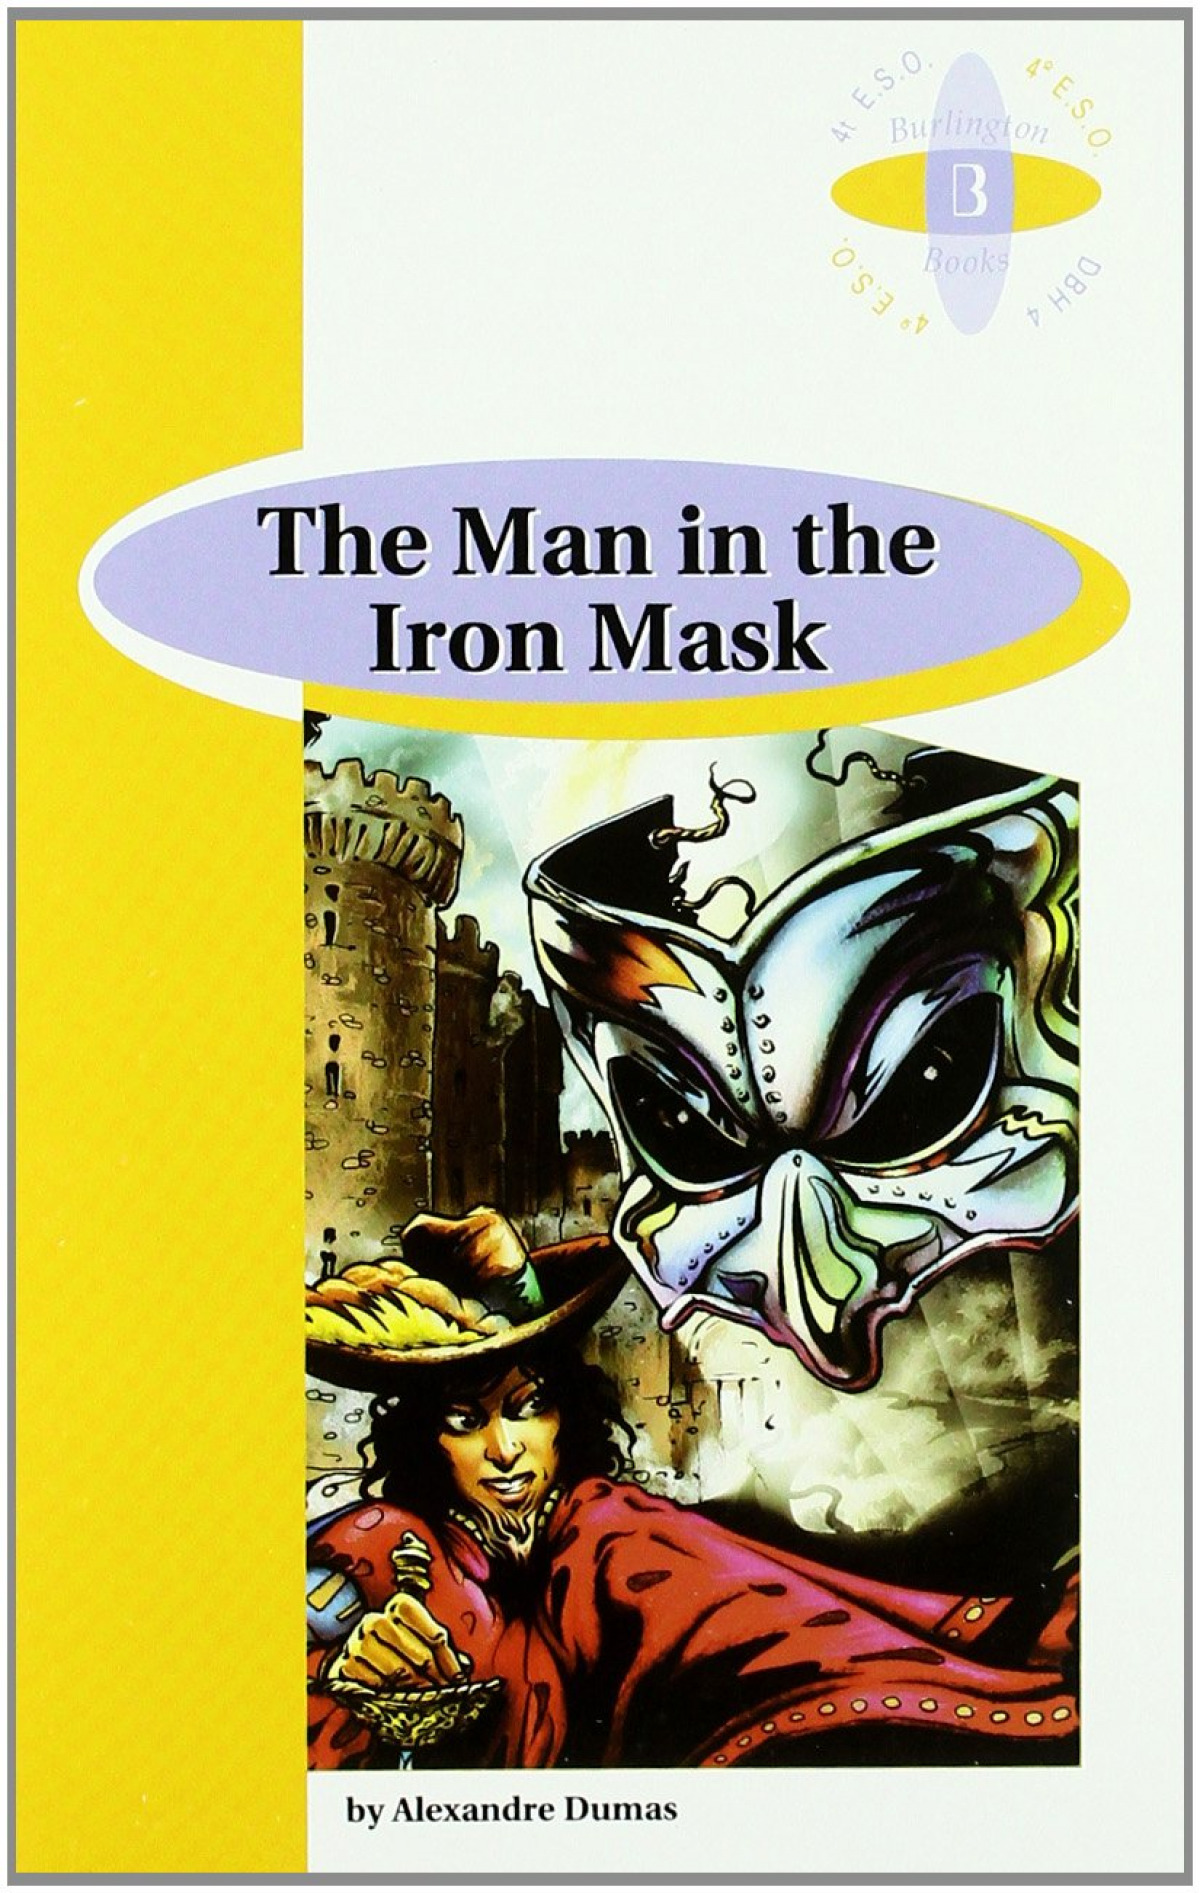 The main in the iron mask - Dumas, Alejandro